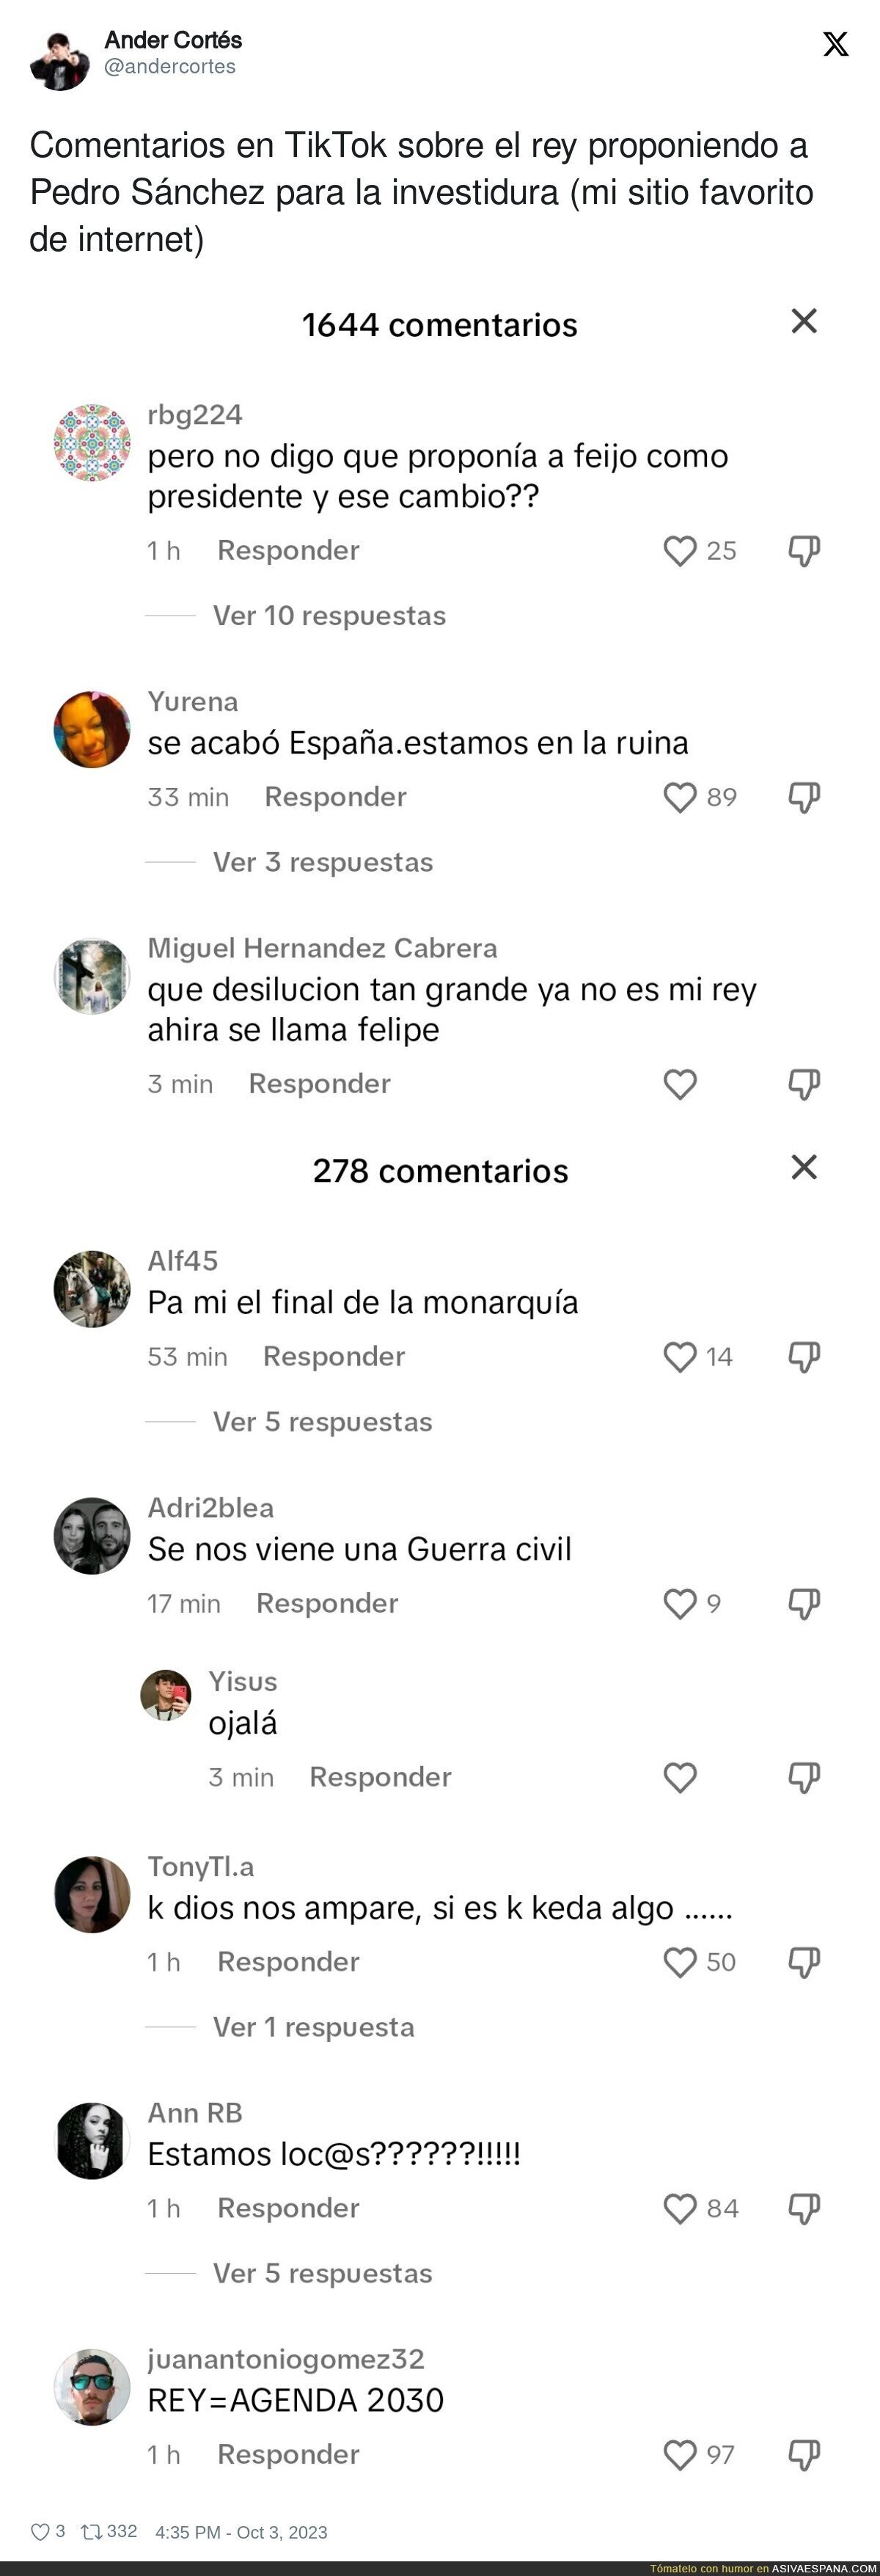 Comentarios en TikTok sobre el rey proponiendo a Pedro Sánchez para la investidura